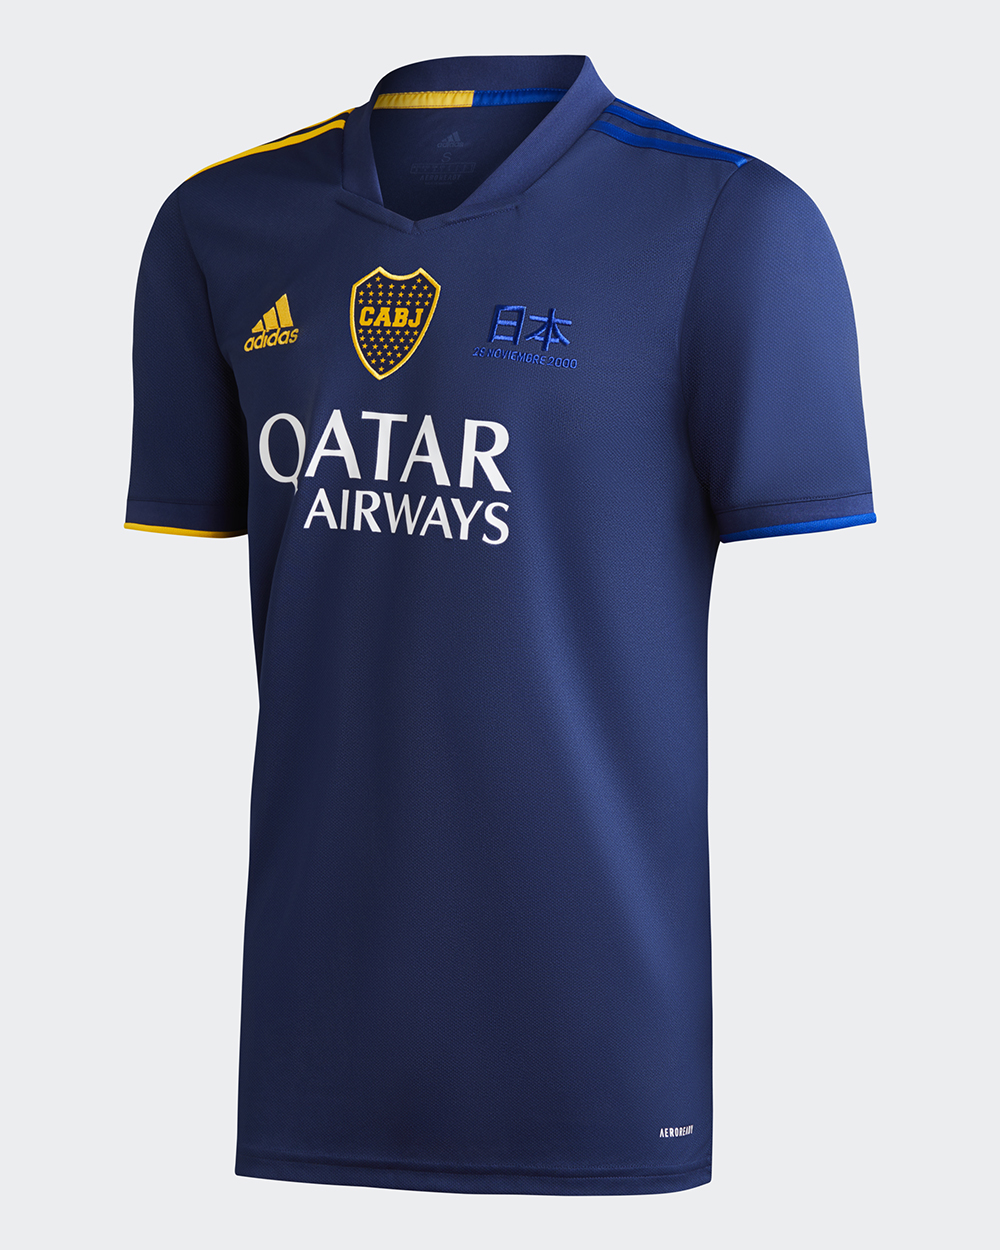 Cuarta camiseta adidas de Boca Juniors 2020 Frente